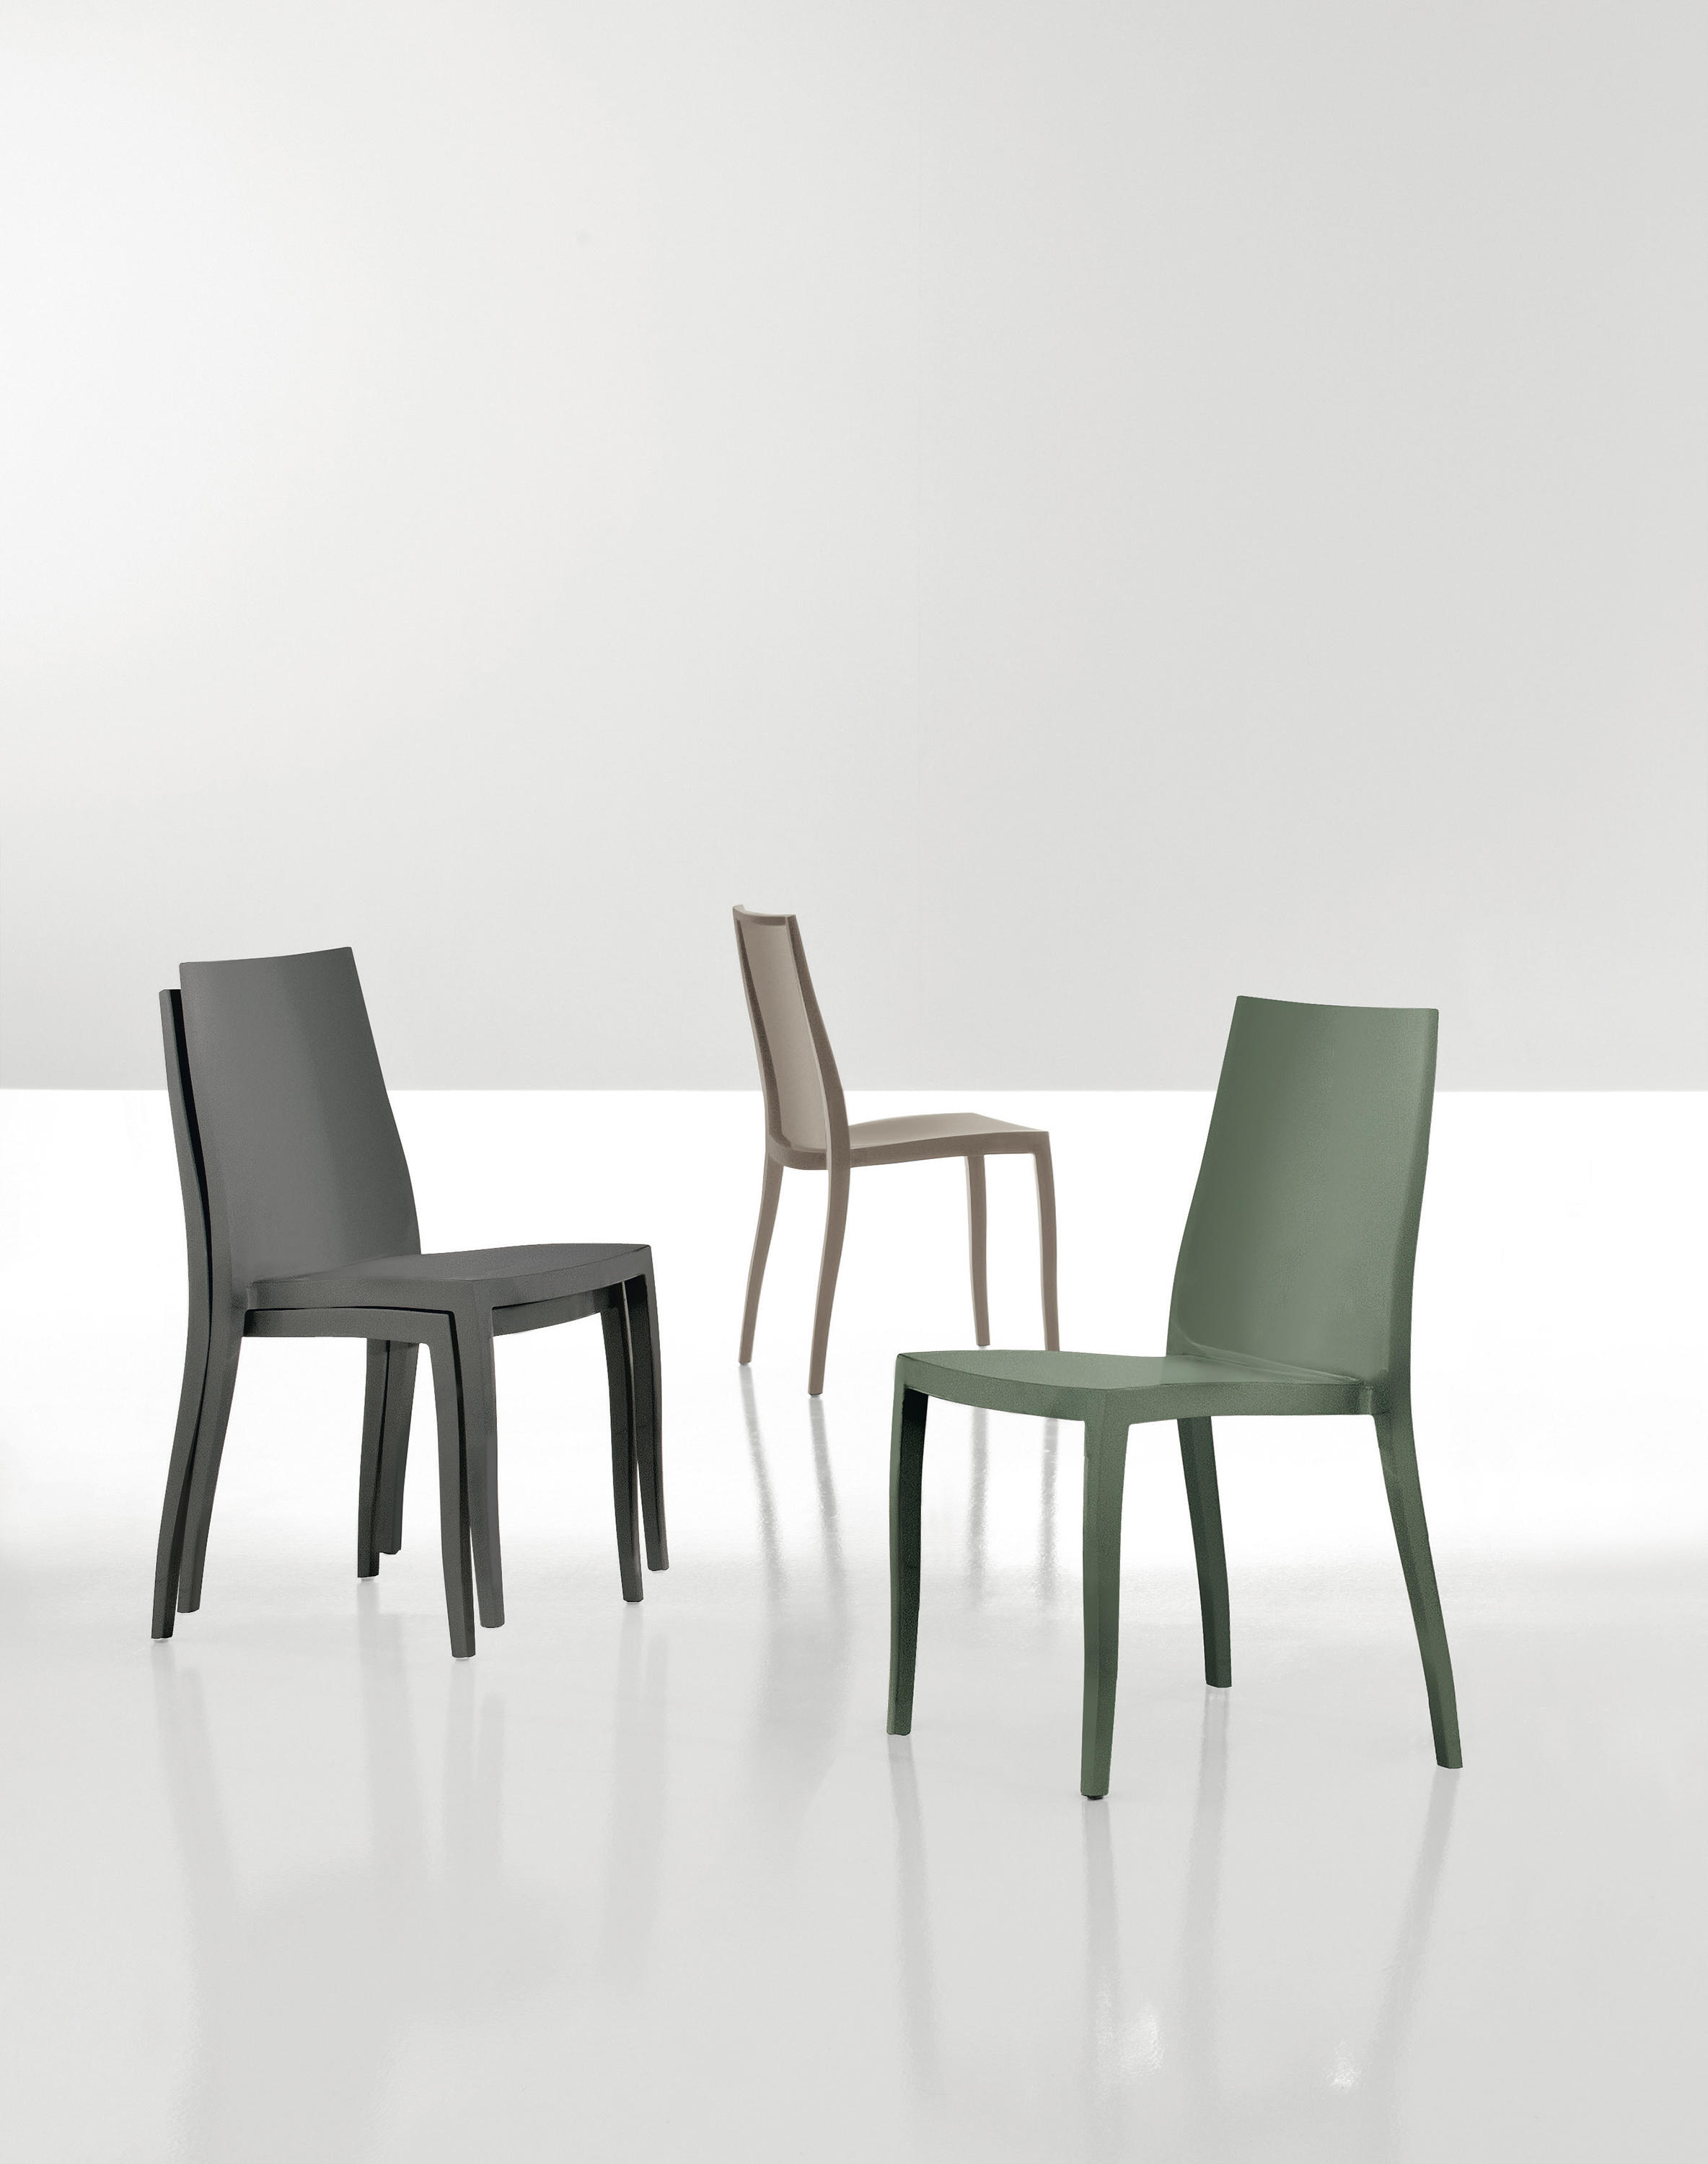 PANGEA - Chairs from Bonaldo | Architonic